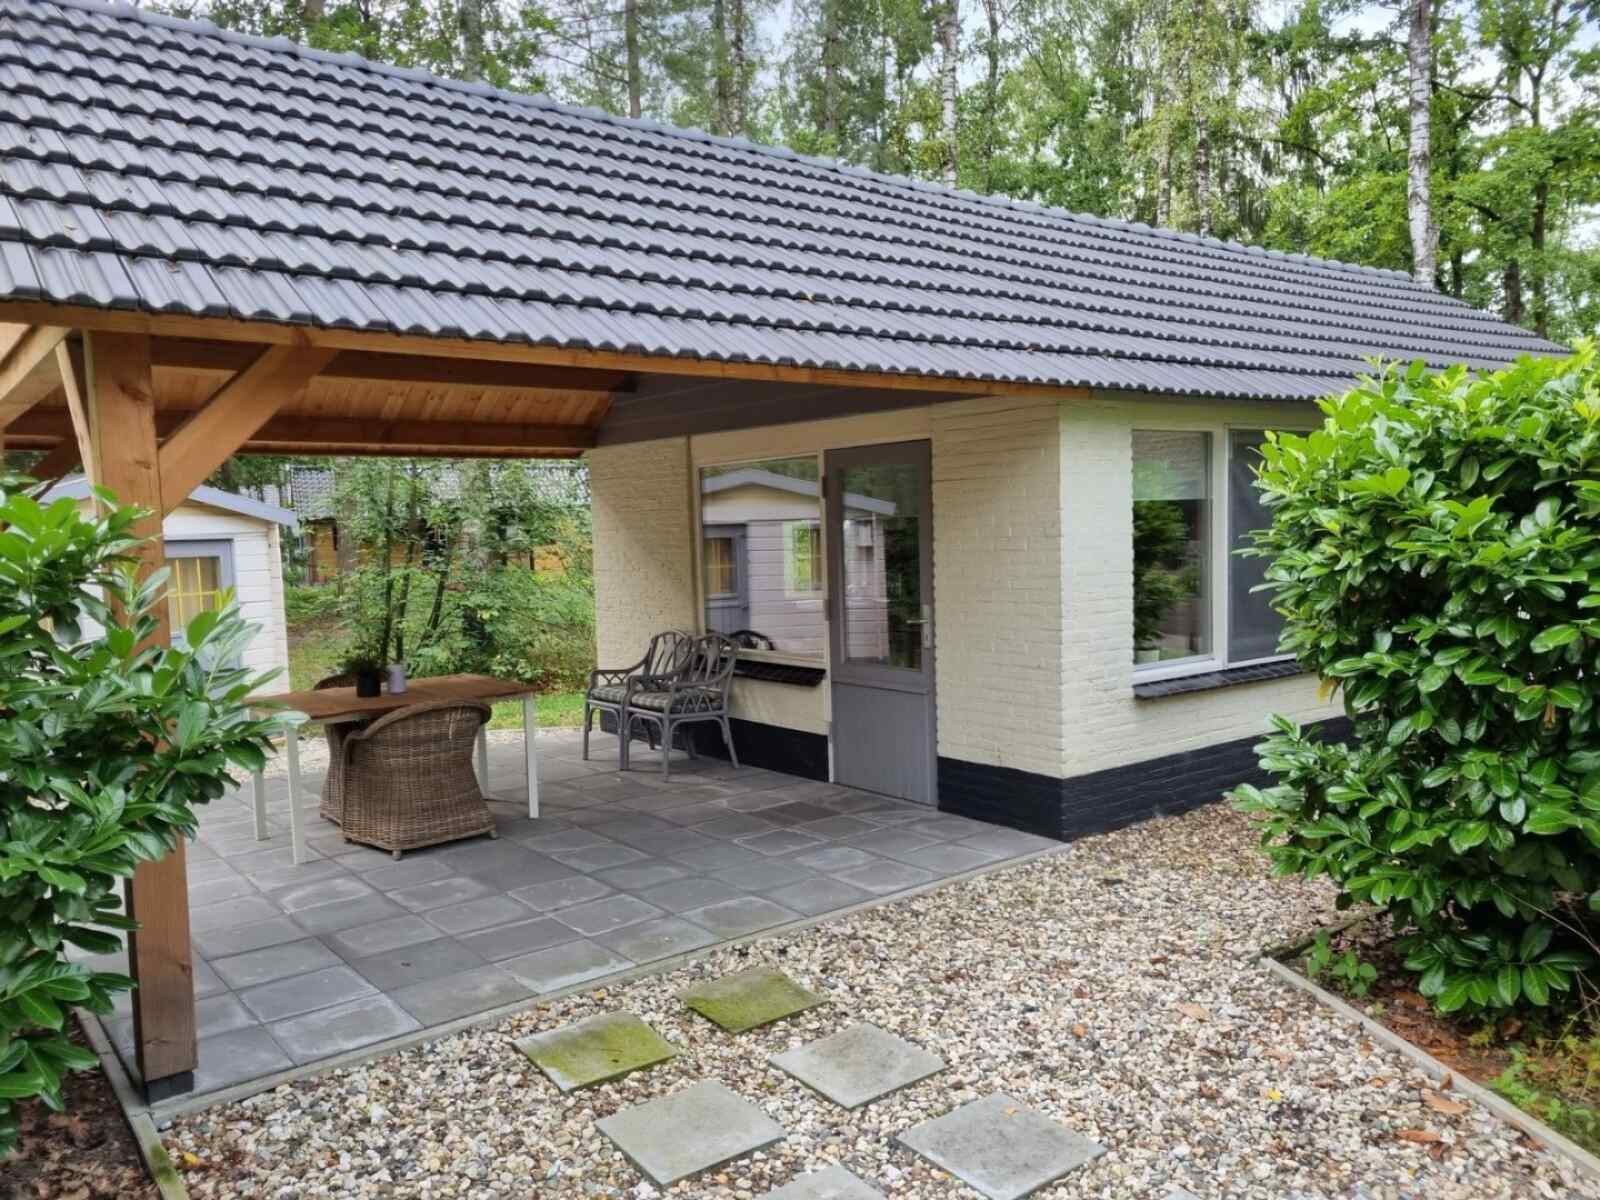 Luxe 2 persoons vakantiehuis met veranda in Limburg aan